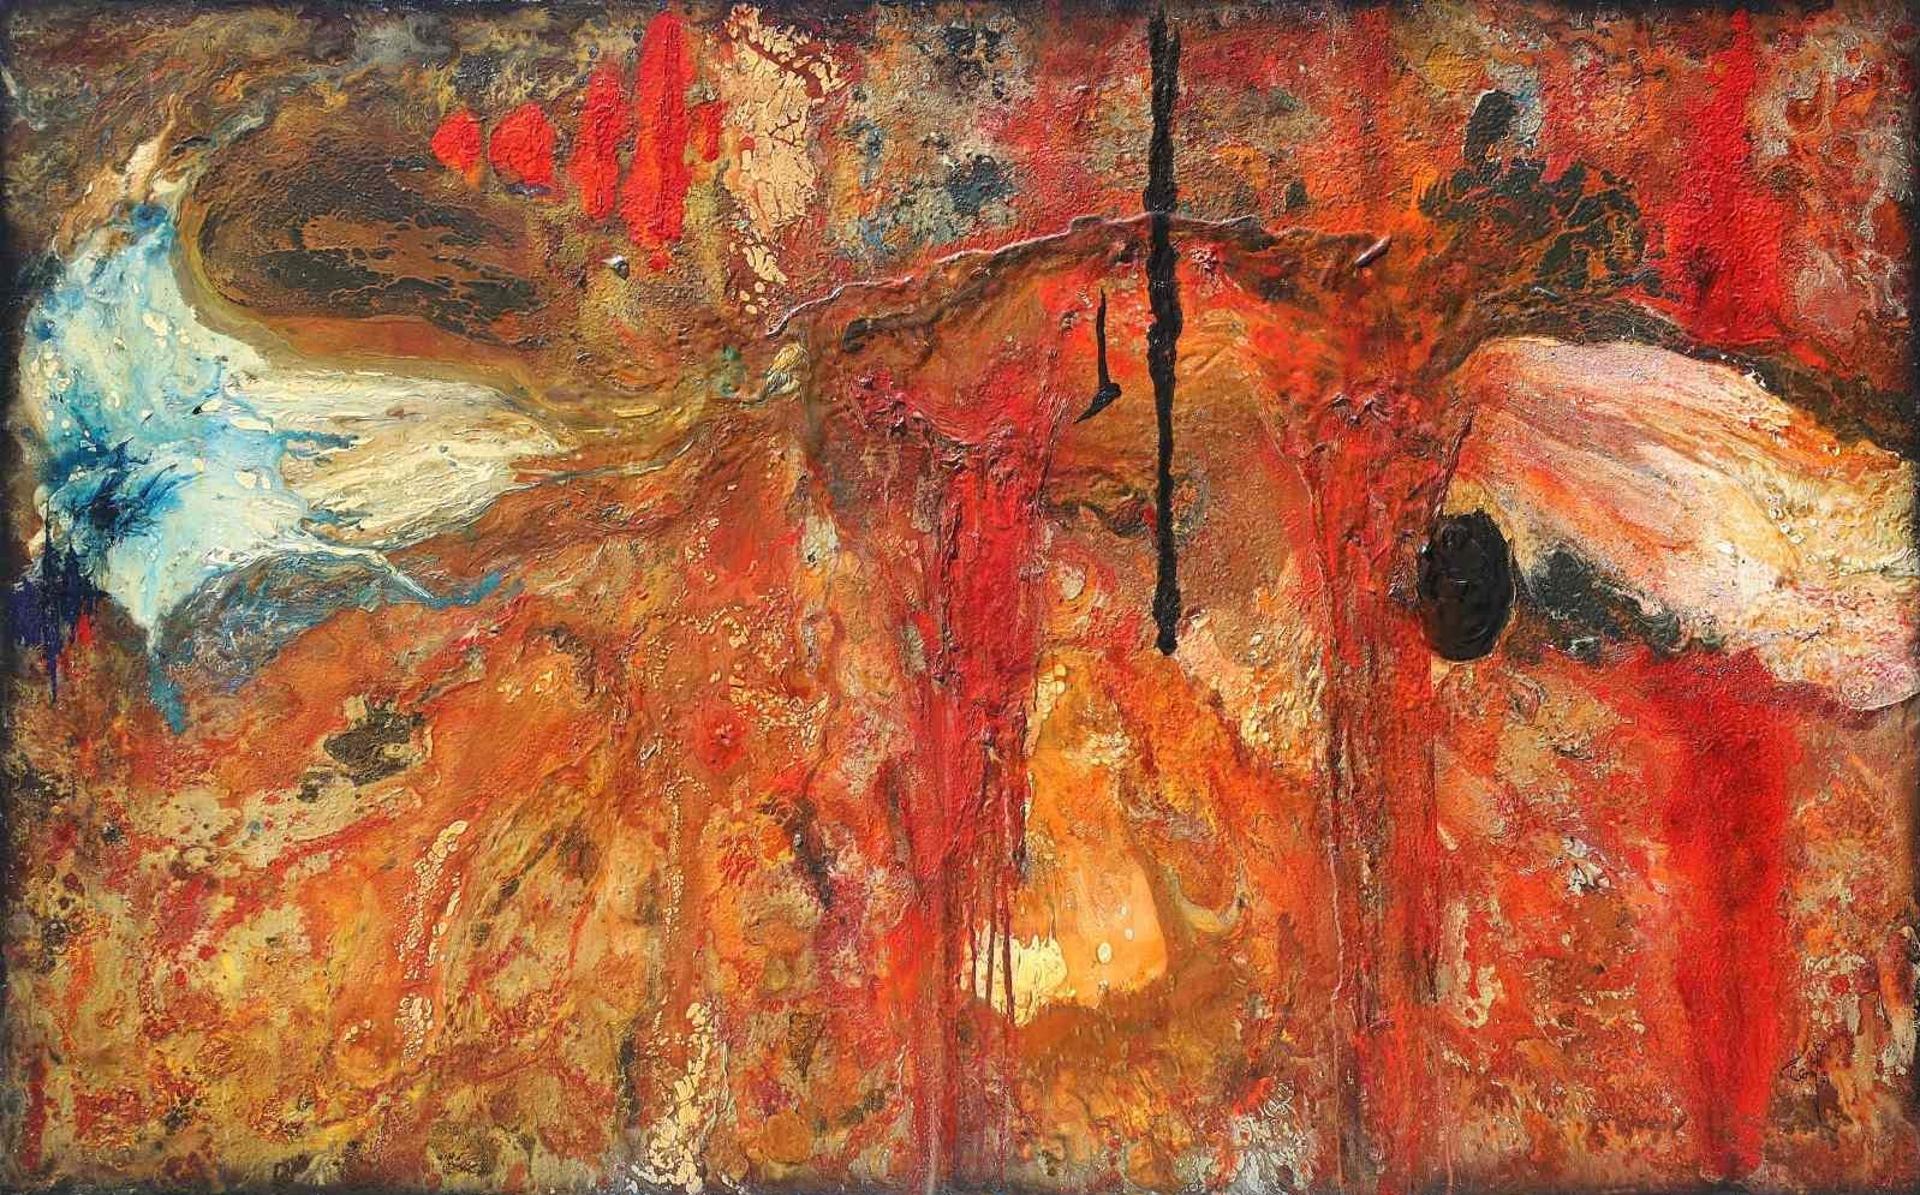 Jason Gogo (1967) - Untitled Composition; 2007